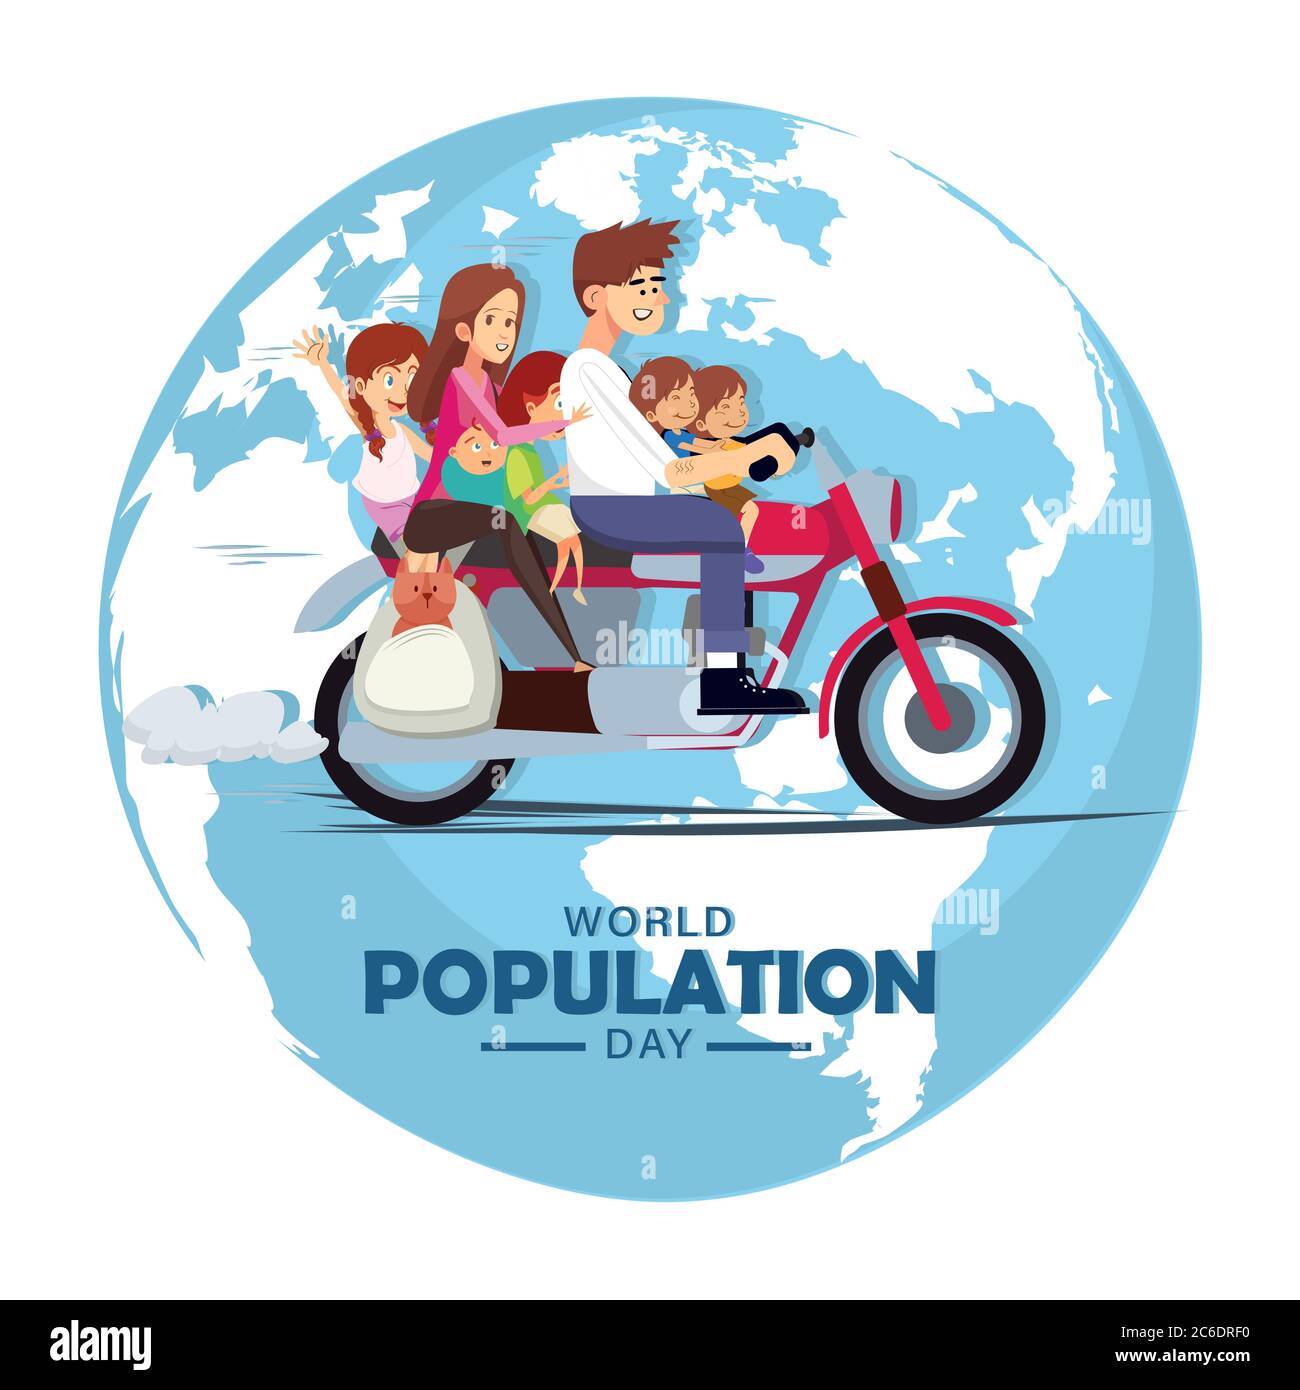 Weltbevölkerung Tag, Reiten ganze Familie mit Hund auf einem Motorrad, Motorrad um den Globus, Poster, Vektor-Illustration Stock Vektor